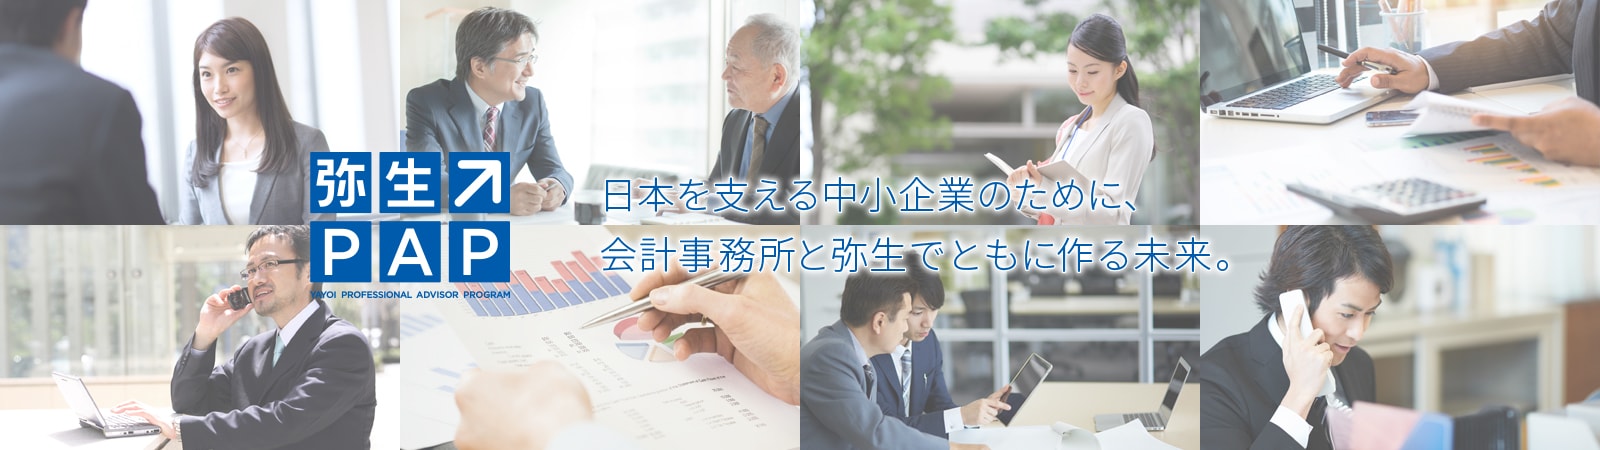 日本を支える中小企業のために、会計事務所と弥生でともに作る未来。